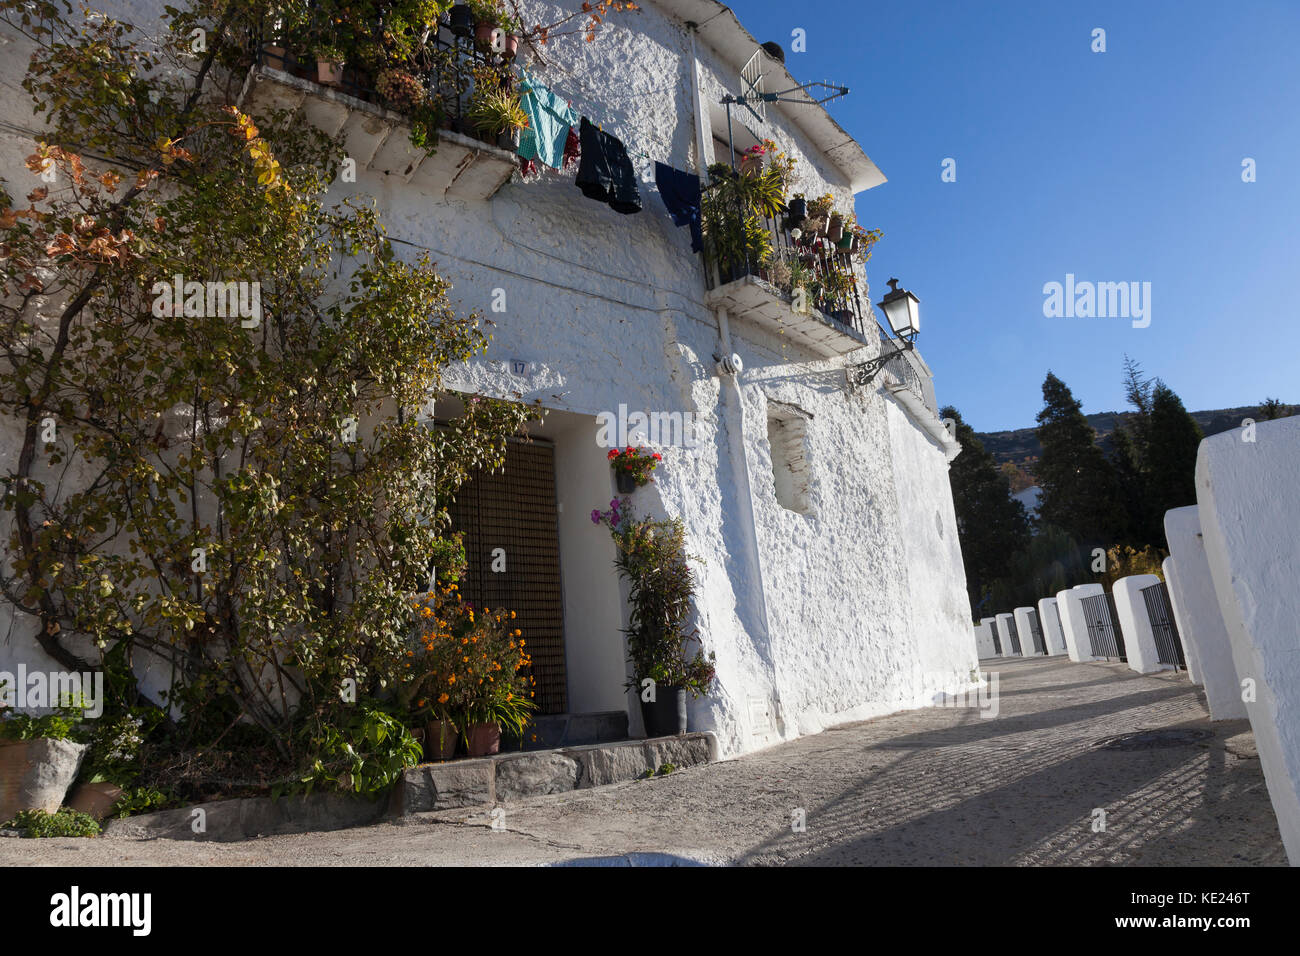 Capileira, Espagne : maisons rustiques le long de calle mentidero. Banque D'Images